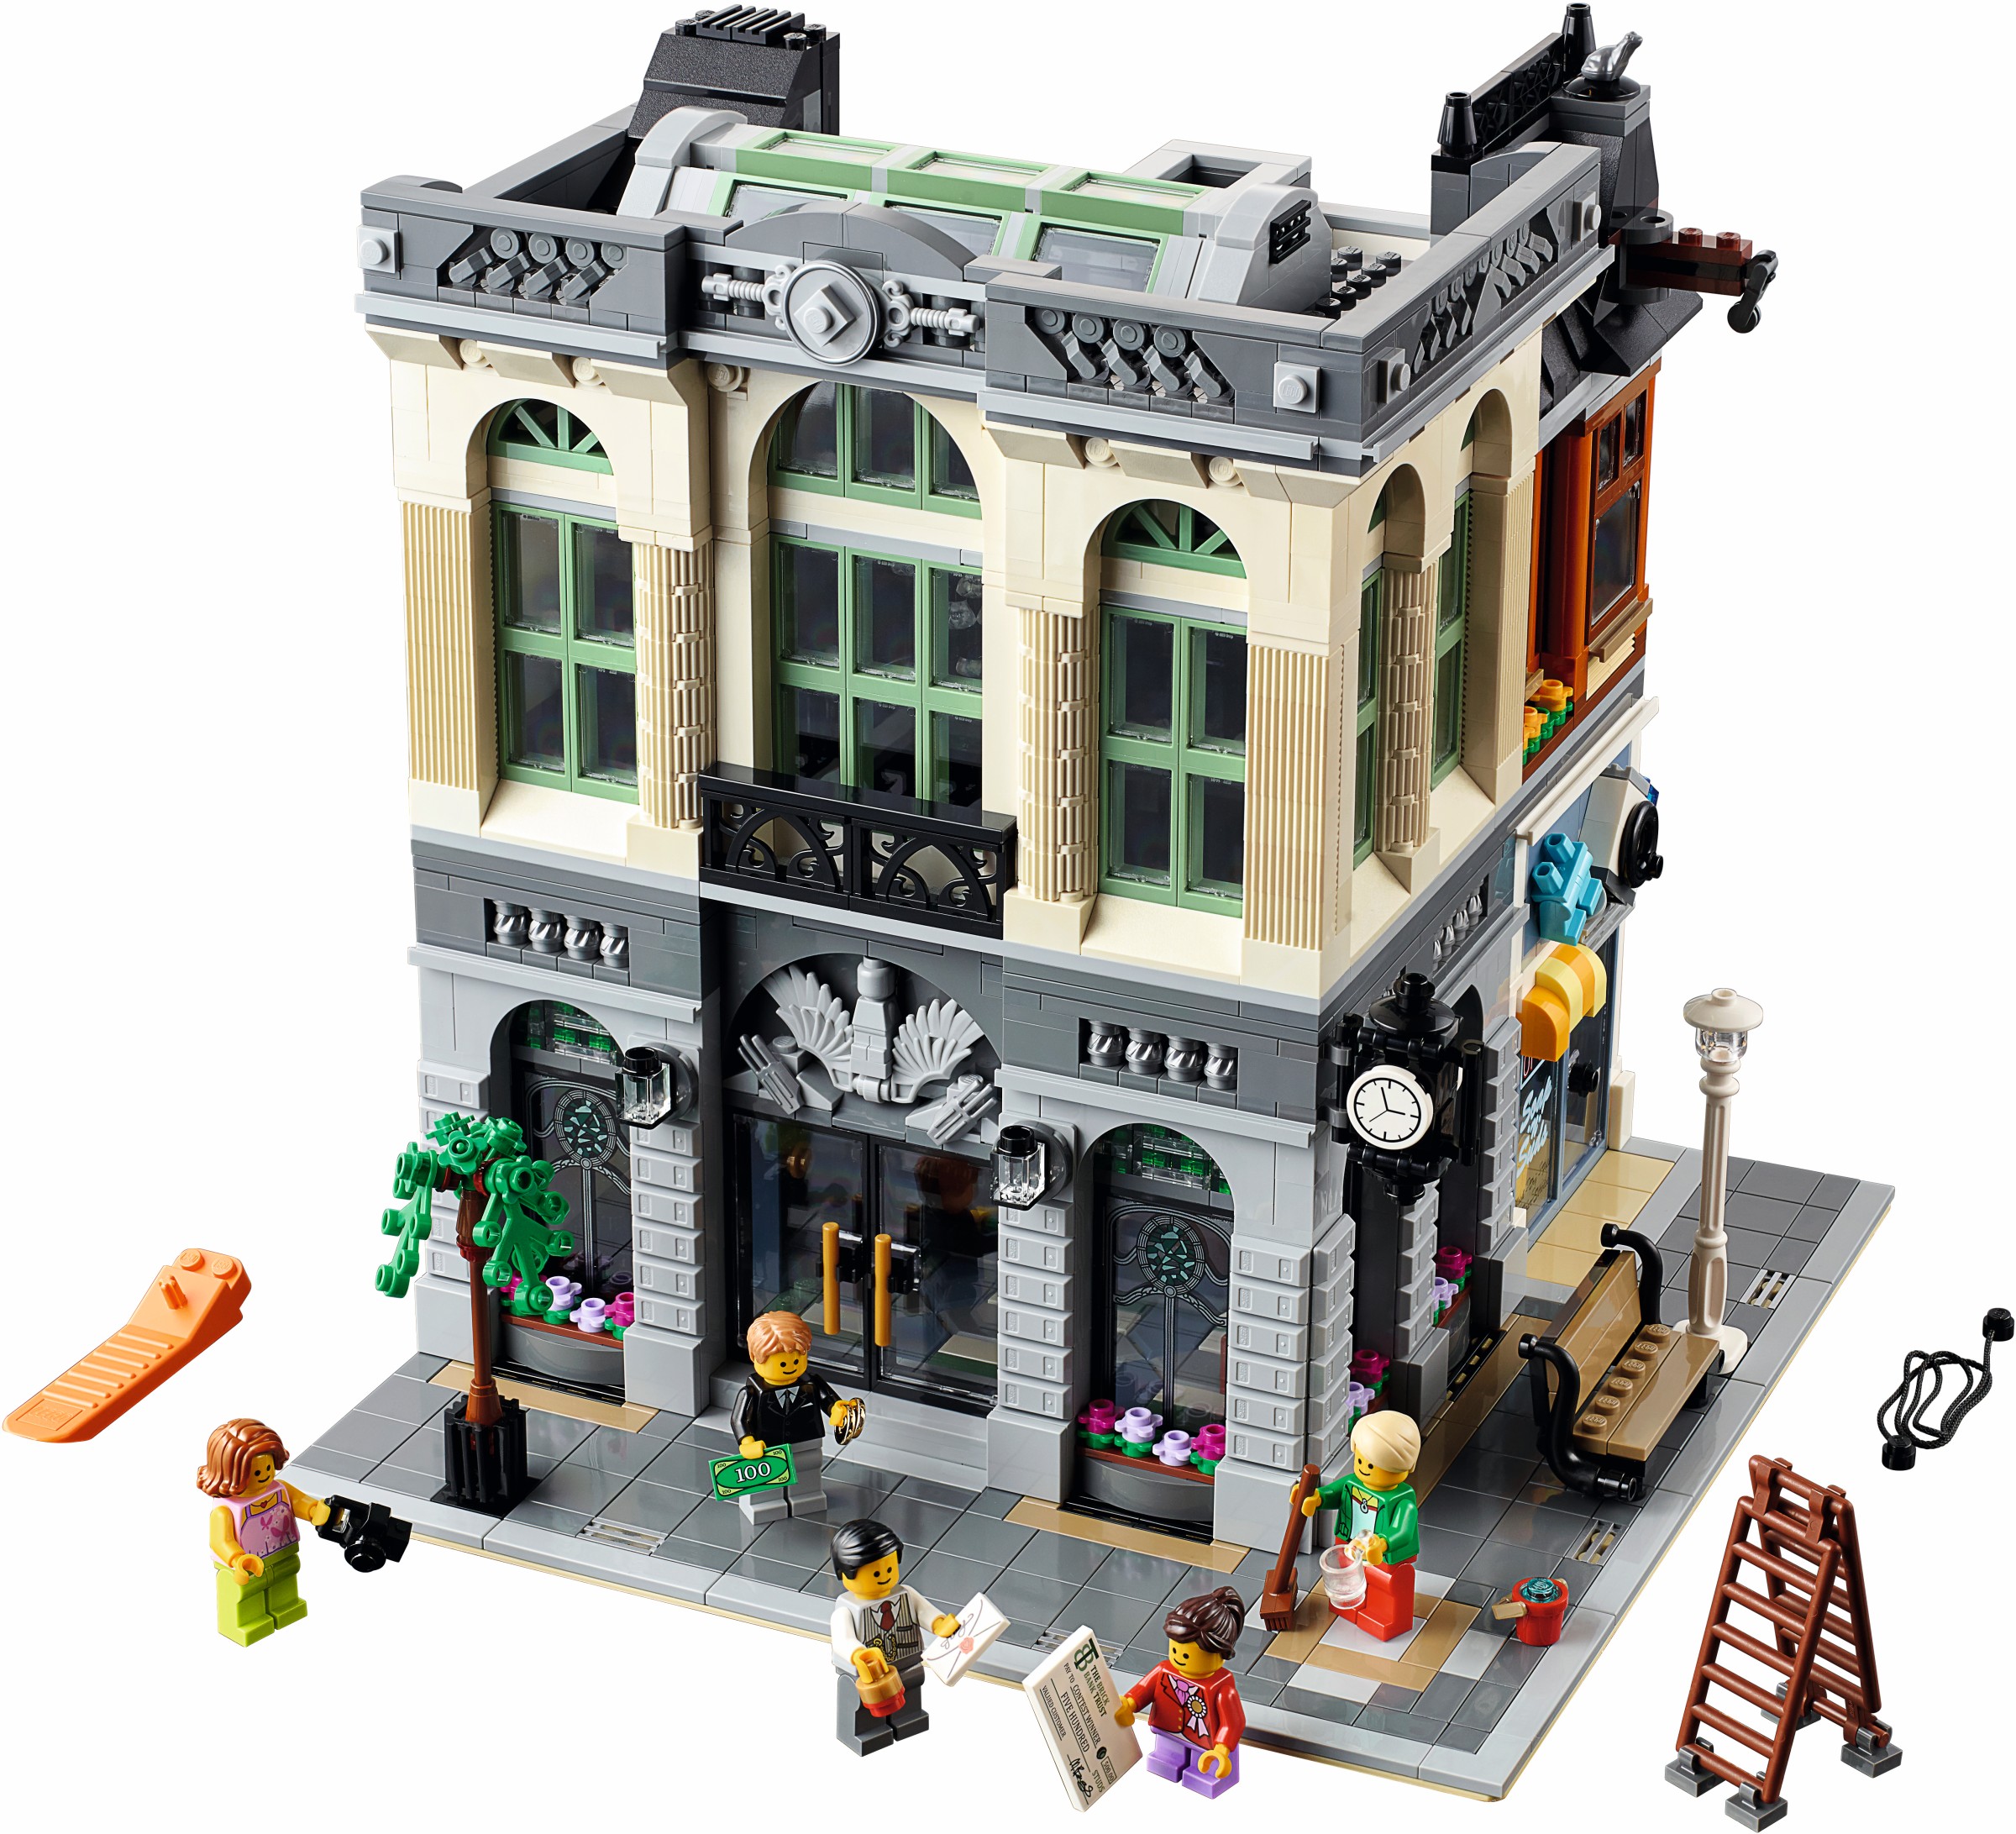 Generator sætte ild Mursten LEGO 2016 | Brickset